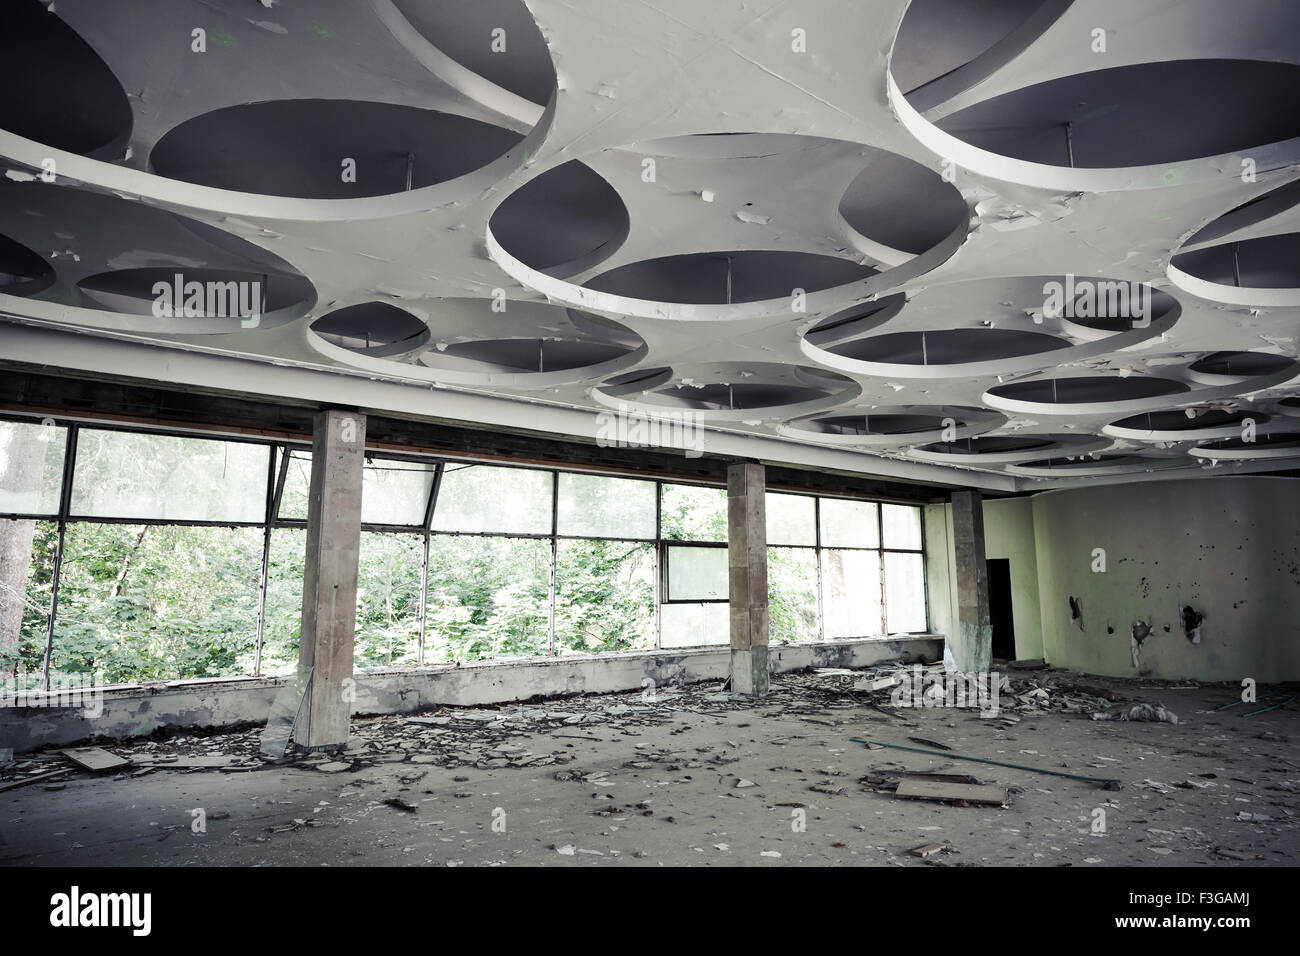 Verlassenes Industriegebäude Interieur. Leere Halle mit runden Muster auf Decke Stockfoto